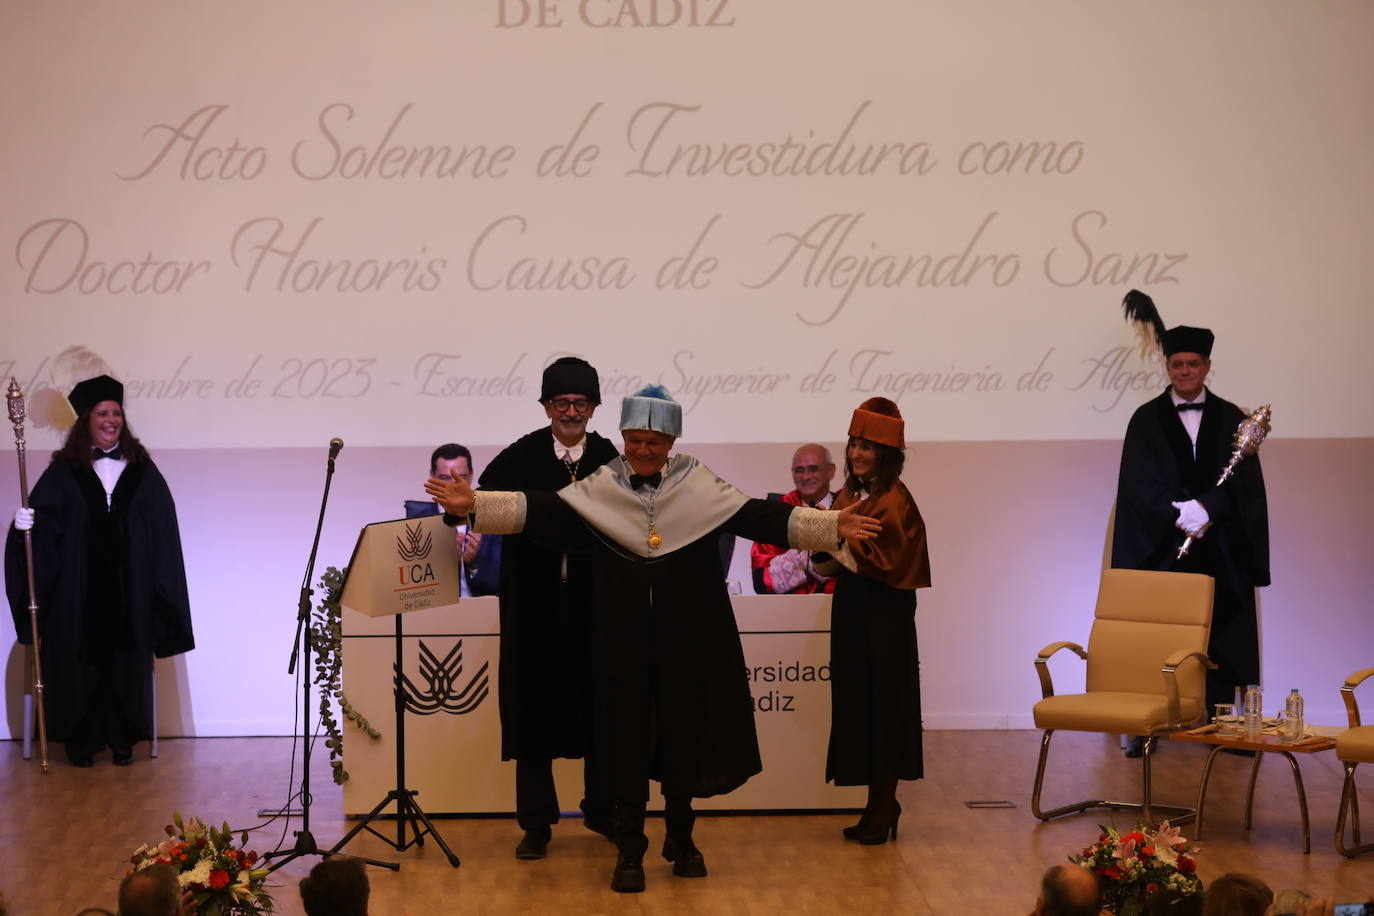 Fotos: Alejandro Sanz es investido doctor Honoris Causa de la Universidad de Cádiz